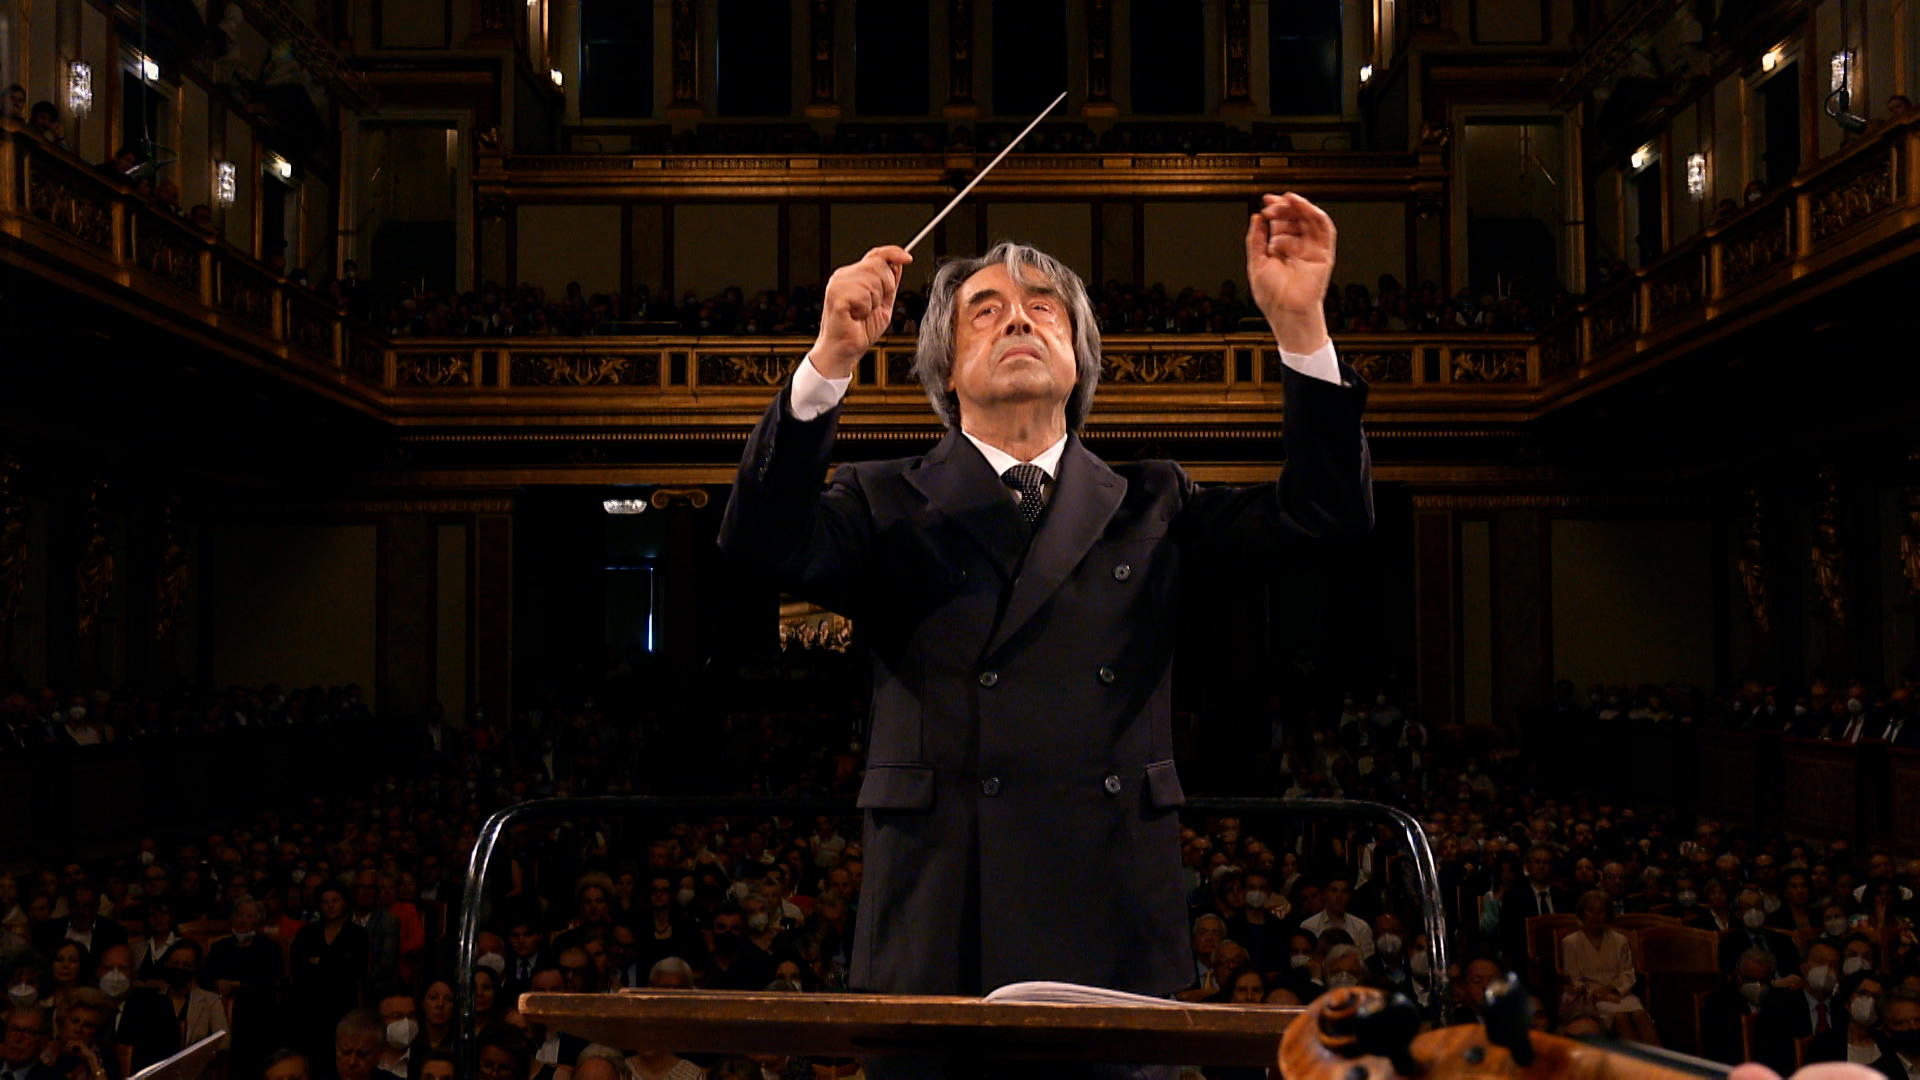 Questa sera Classica HD propone in prima visione Riccardo Muti e la Wiener Philharmoniker insieme per il 200° anniversario della Nona Sinfonia di Beethoven (Vienna, 1824 - 2024)